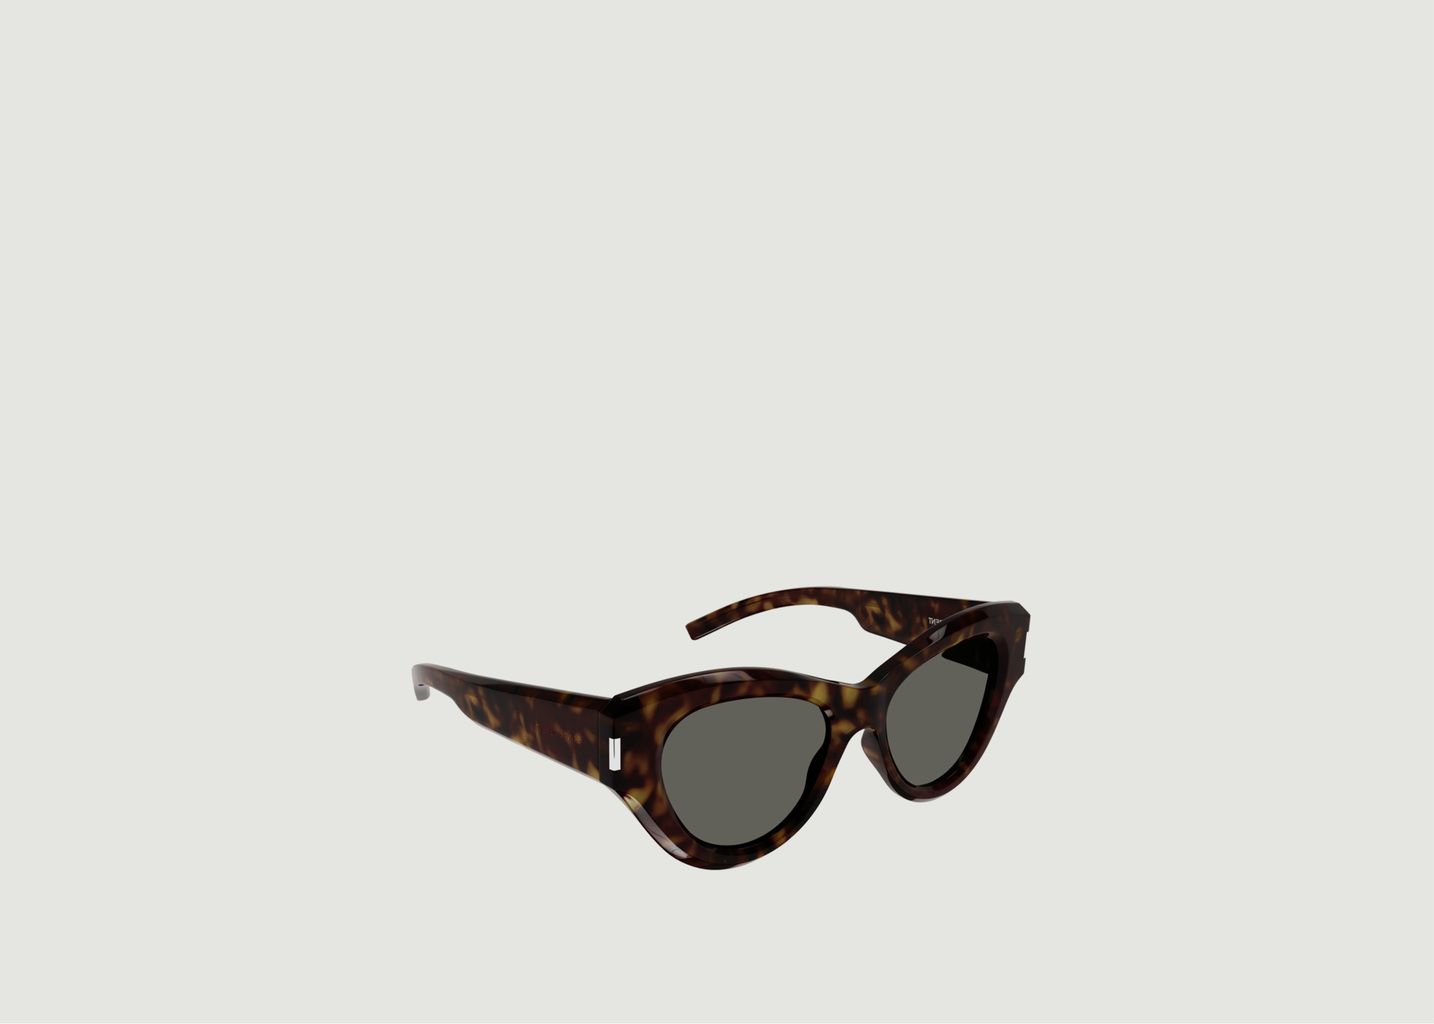 Sunglasses SL 506 in acetate - Saint Laurent